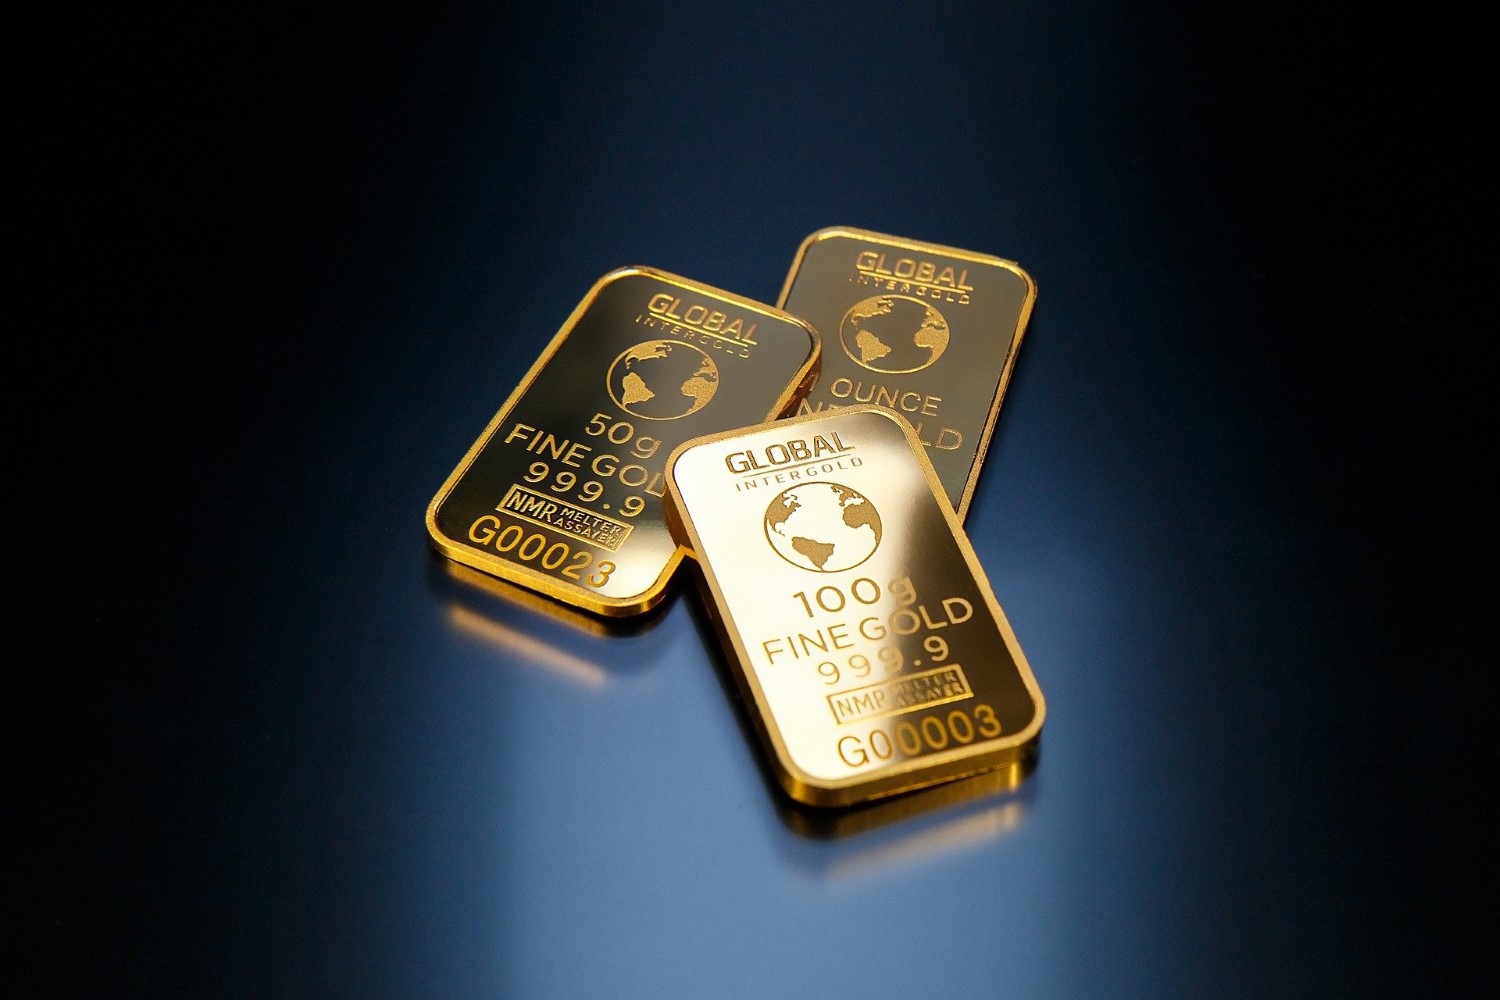 大仏鋳造と金の関係性とは